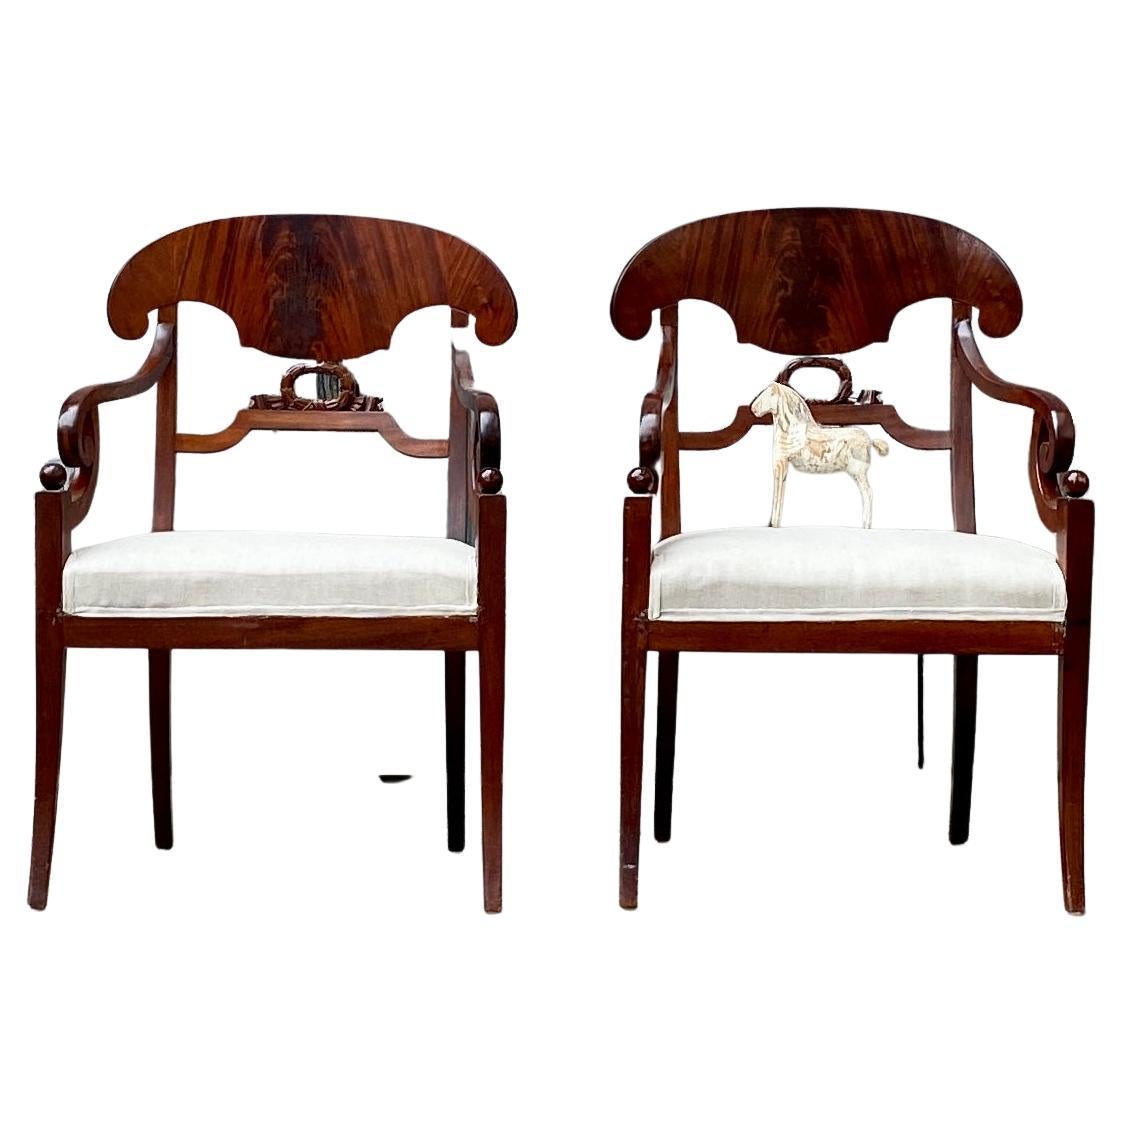 Paire de fauteuils en acajou de Stockholm de la période Empire / Karl Johan, vers 1810-1830 Suède.
Une paire de fauteuils sont plaqués dans un magnifique acajou brun foncé et sont de conception très classique avec une décoration centrale sculptée.